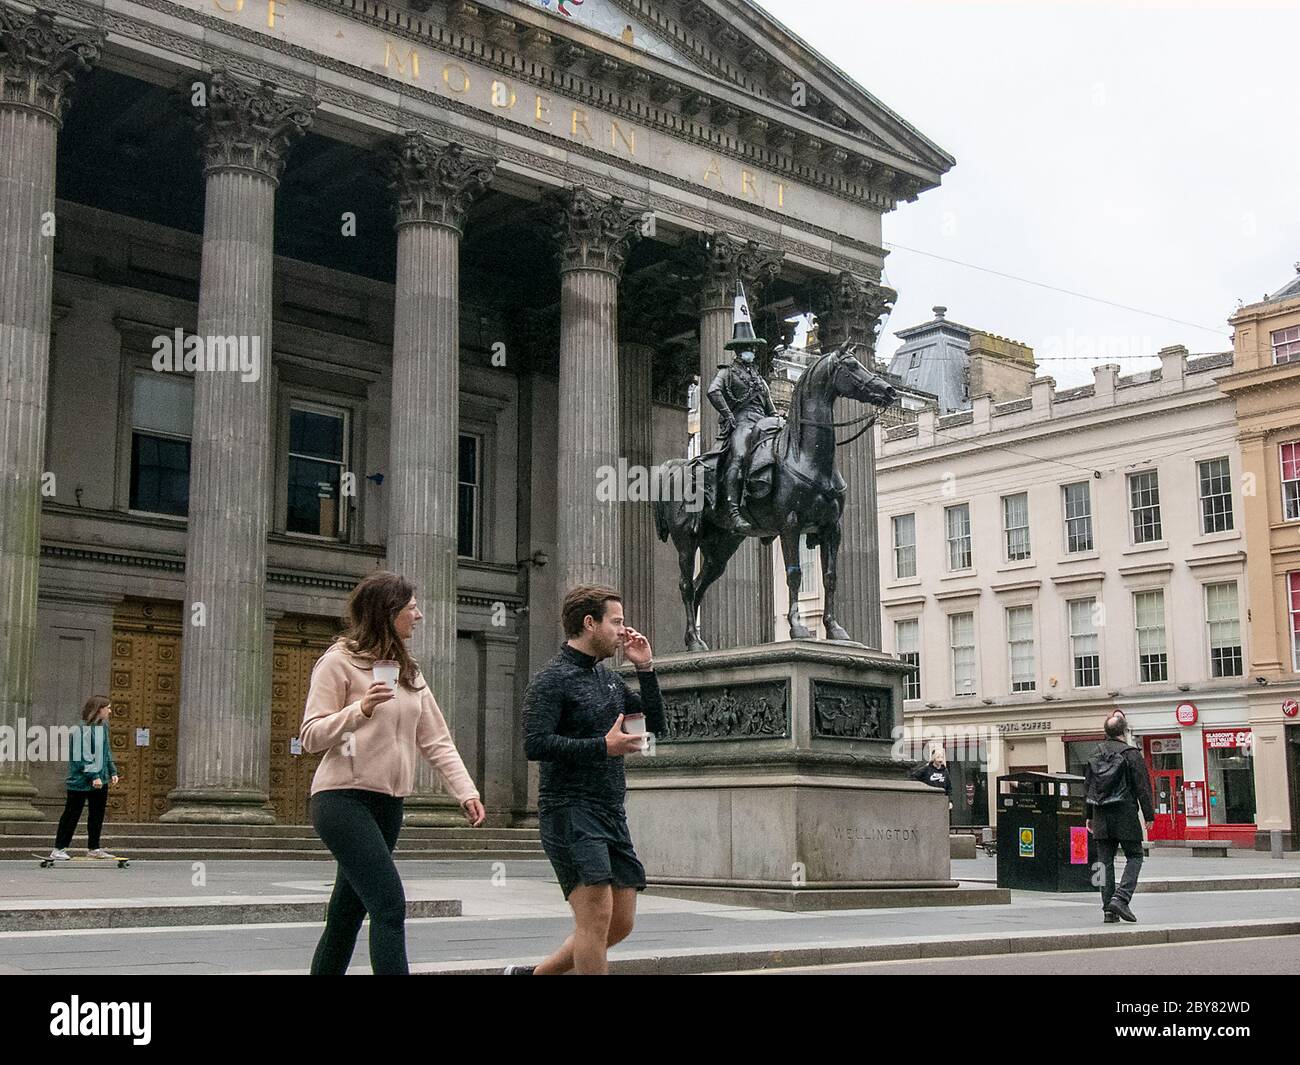 Glasgow, Scozia, Regno Unito. 9 giugno 2020: La statua del Duca di Wellington che sostiene la protesta Black Live Matters. La statua si trova di fronte al Goma, che era una casa cittadina del Signore del tabacco del XVIII secolo. Foto Stock